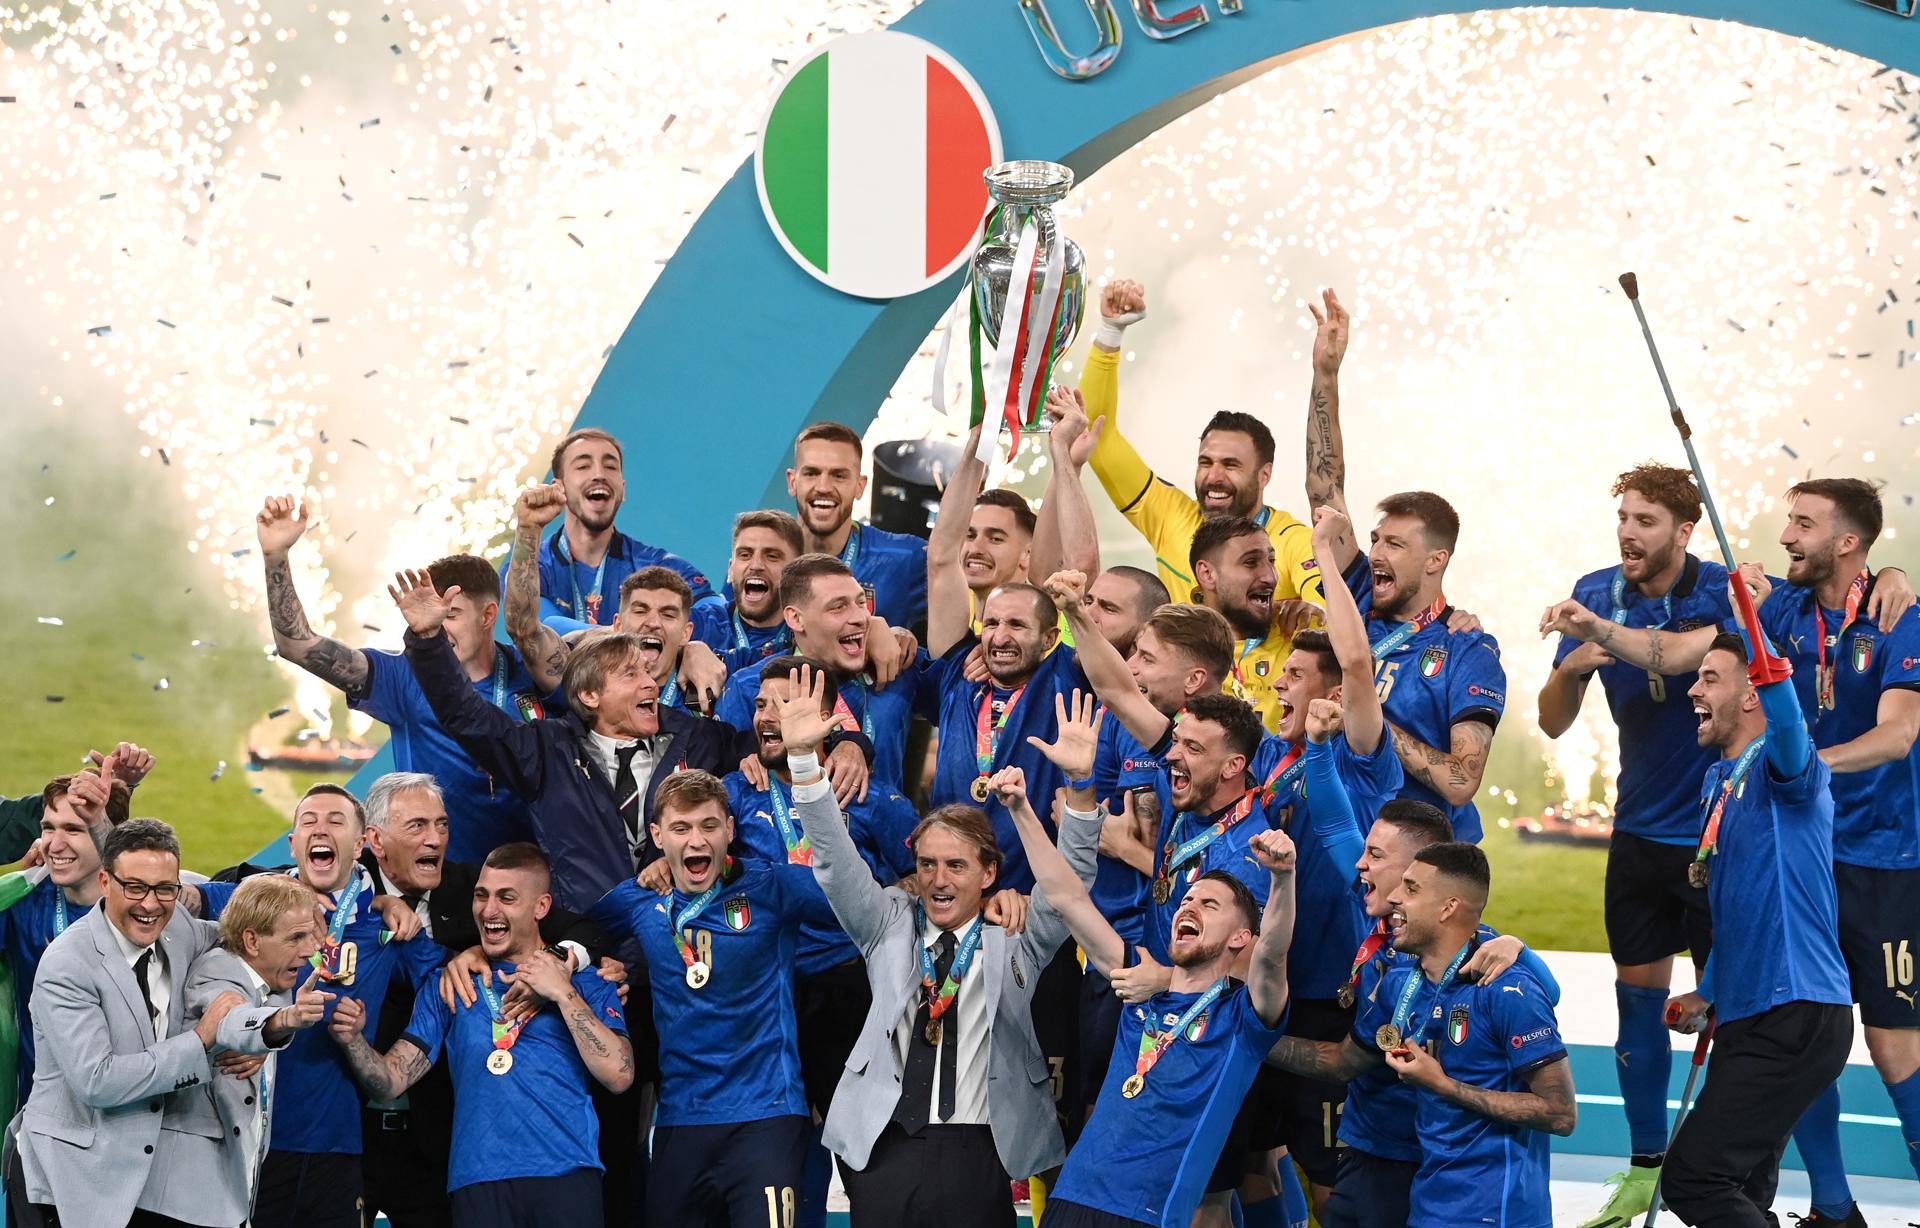 La Federación Italiana entregó a la UEFA la candidatura para la Eurocopa 2032